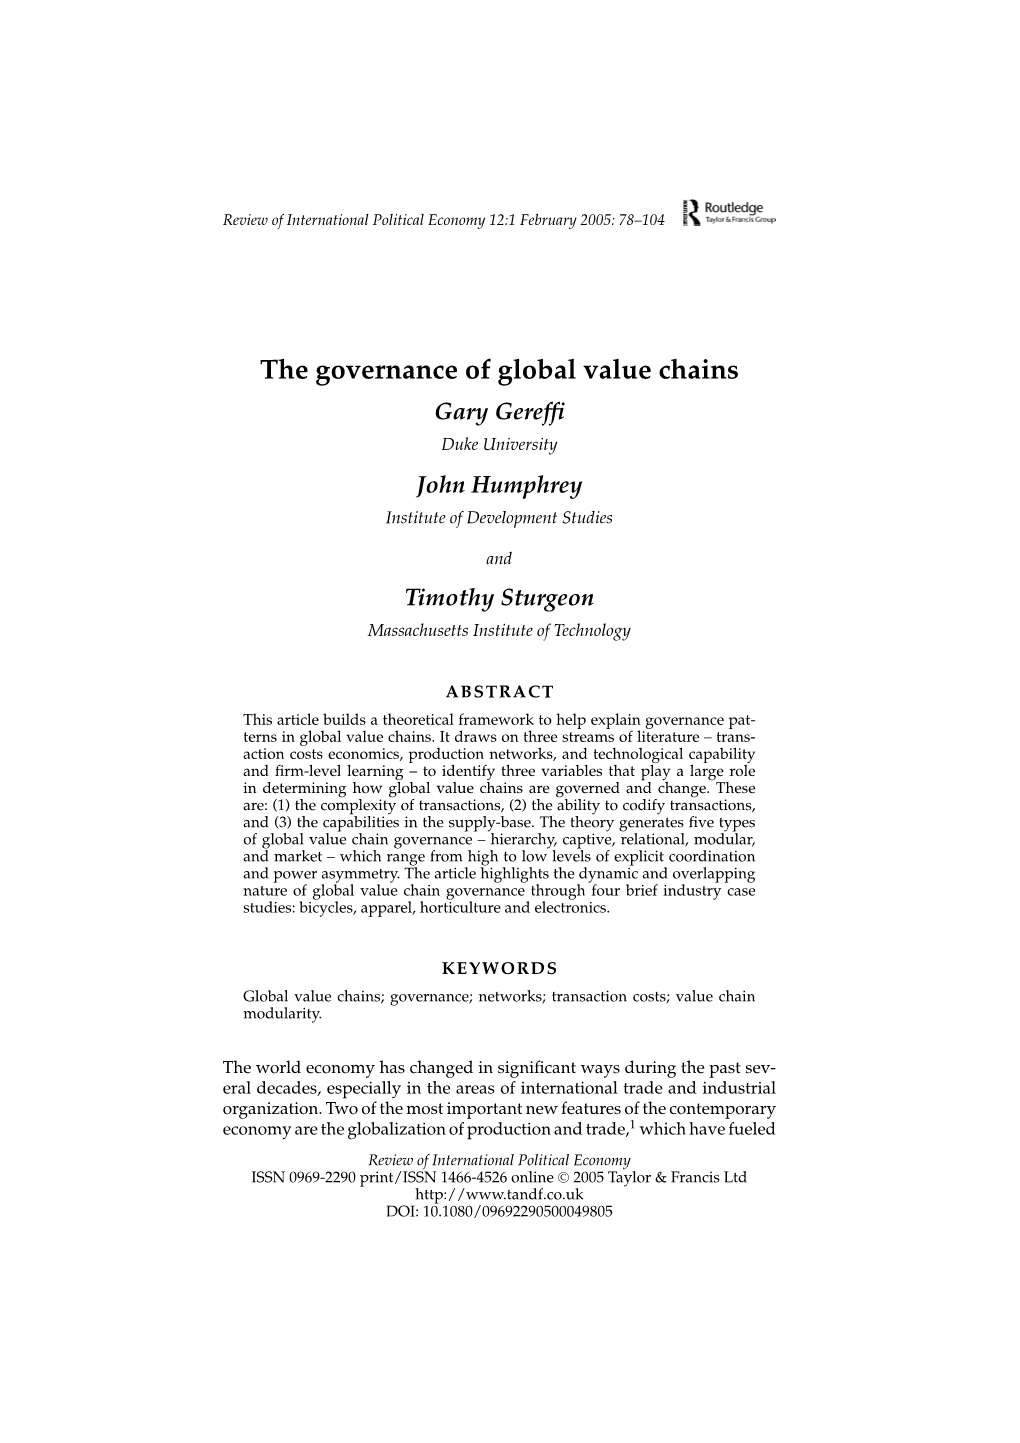 The Governance of Global Value Chains Gary Gerefﬁ Duke University John Humphrey Institute of Development Studies